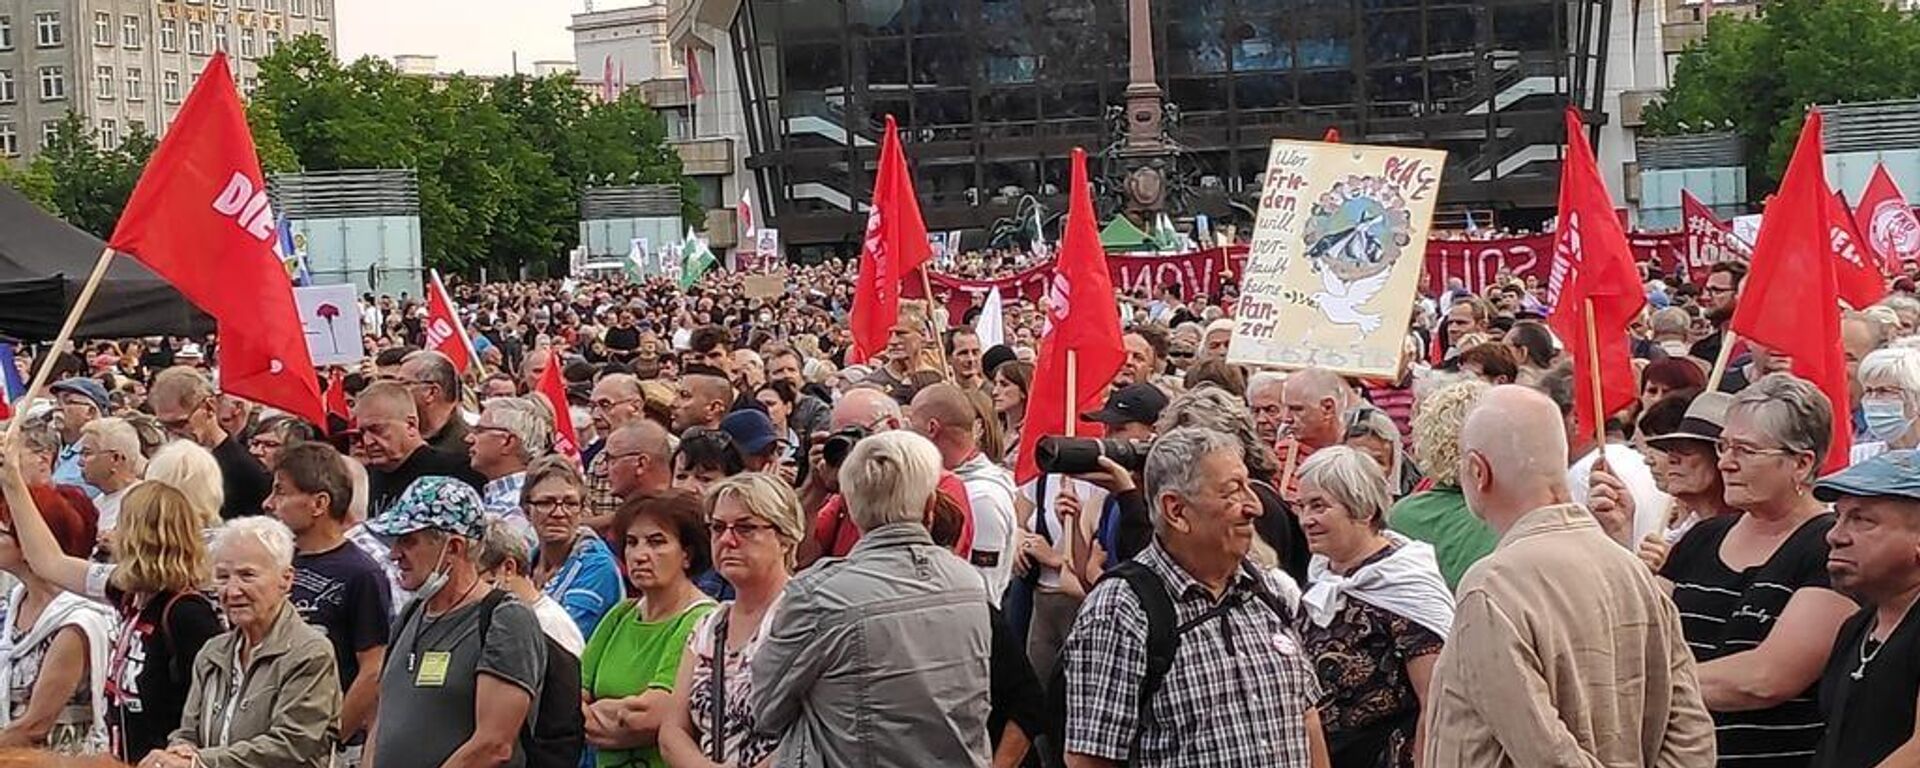 Milhares de pessoas se reúnem para protestar contra o aumento dos preços de energia em Leipzig, na Alemanha - Sputnik Brasil, 1920, 05.09.2022